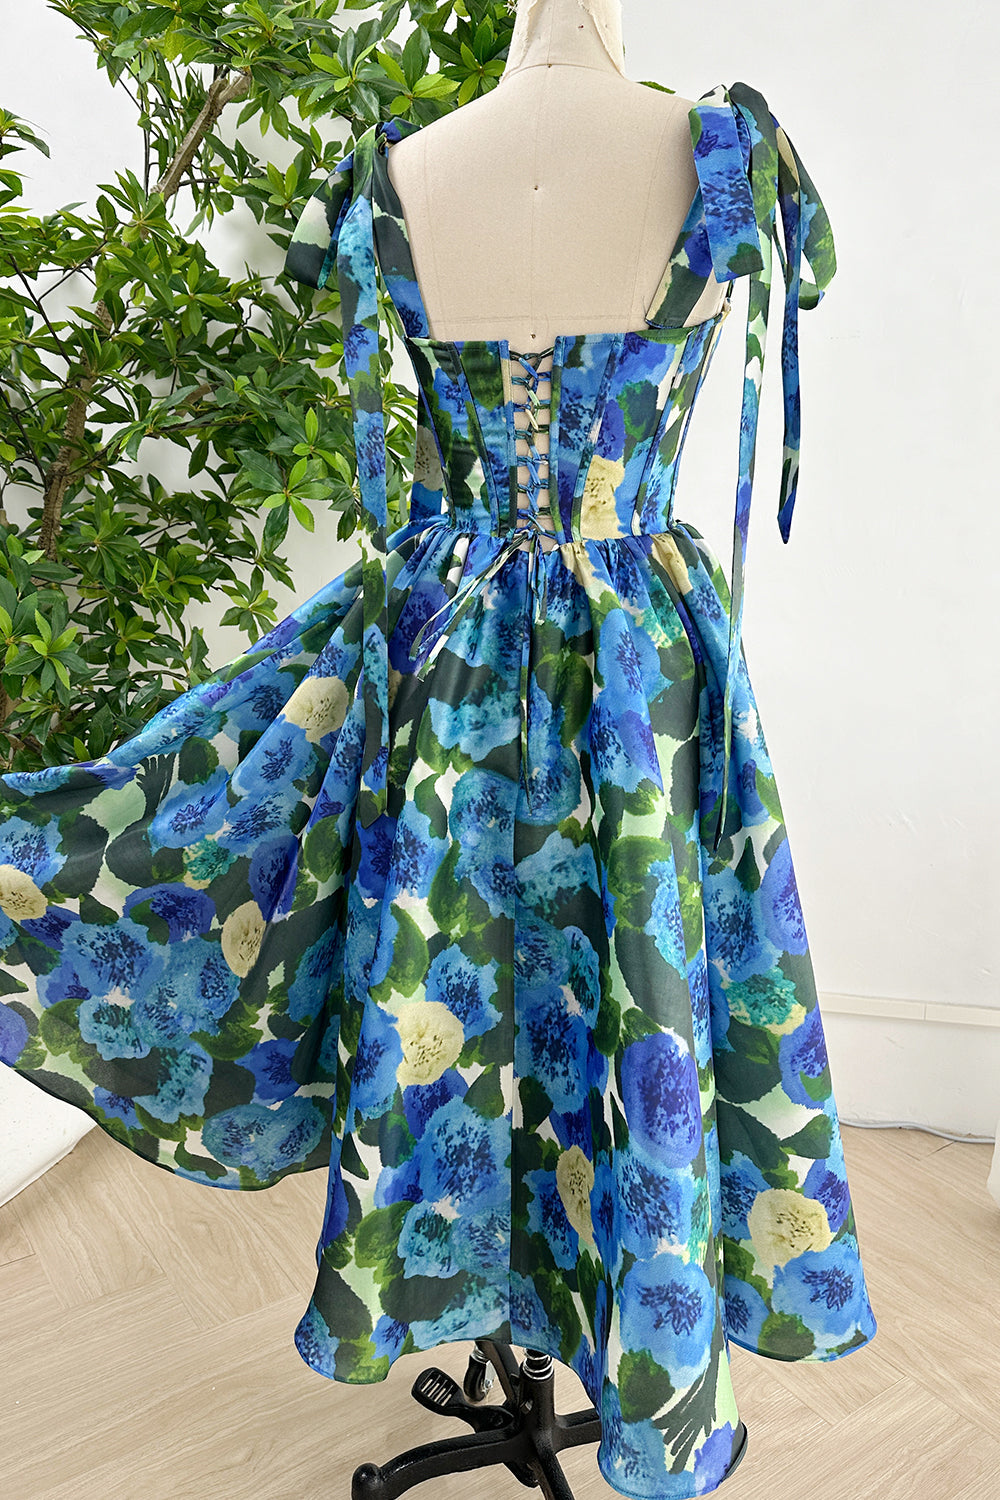 MissJophiel Corset Blue Green Floral Print Satin Dress Tie Straps